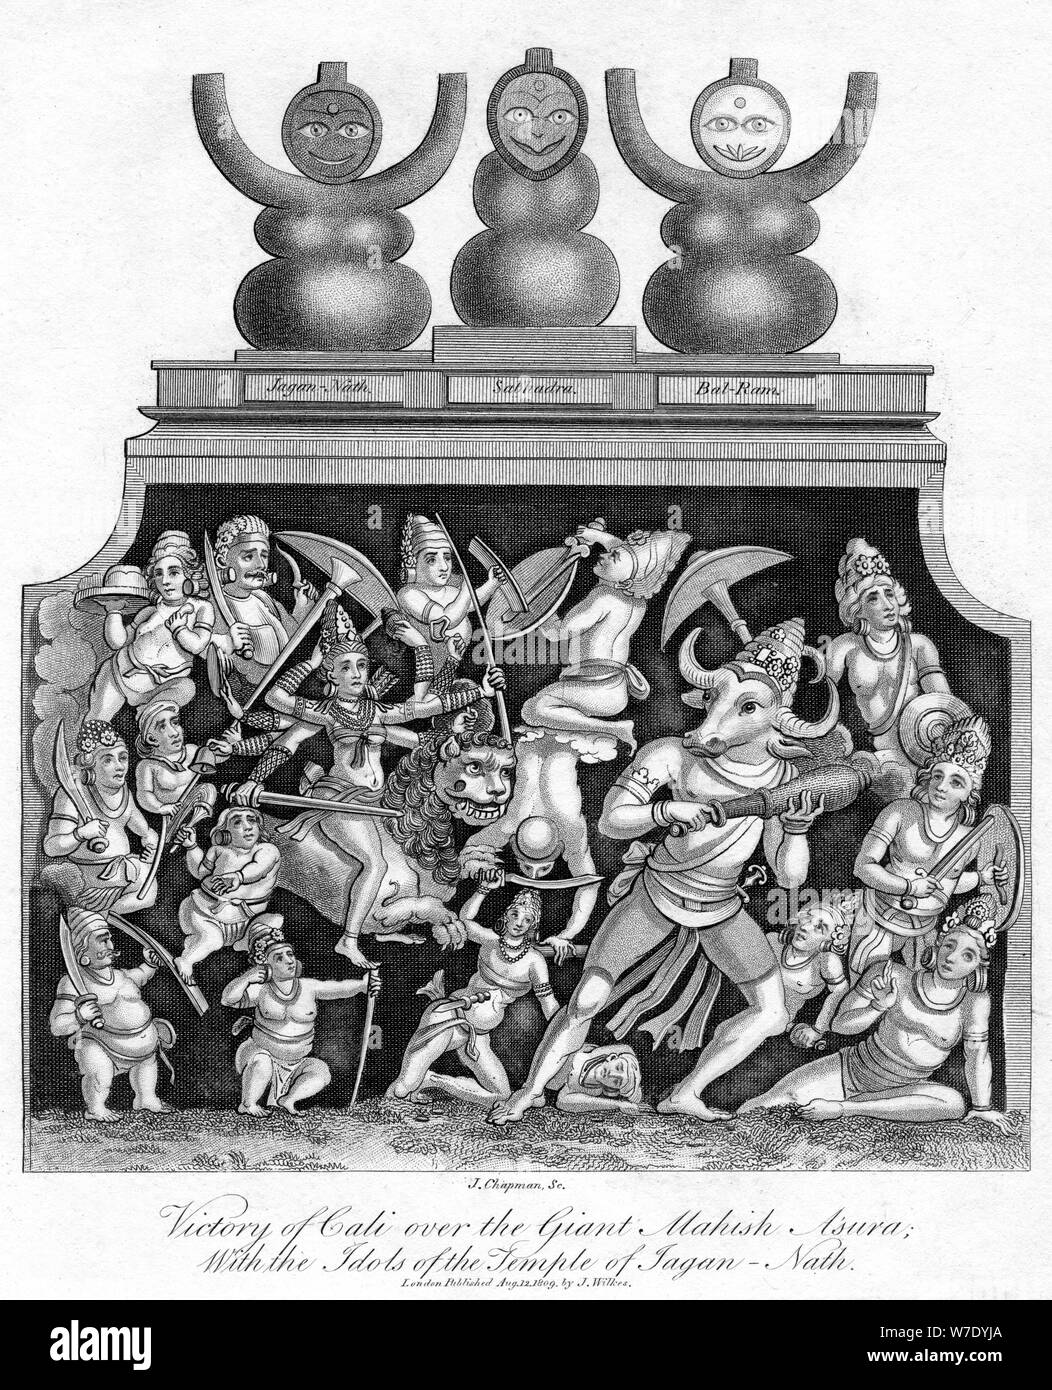 "La vittoria di Cali oltre il gigante Mahish un'sura, con gli idoli del tempio di Jagannath', 1809.Artista: J Chapman Foto Stock